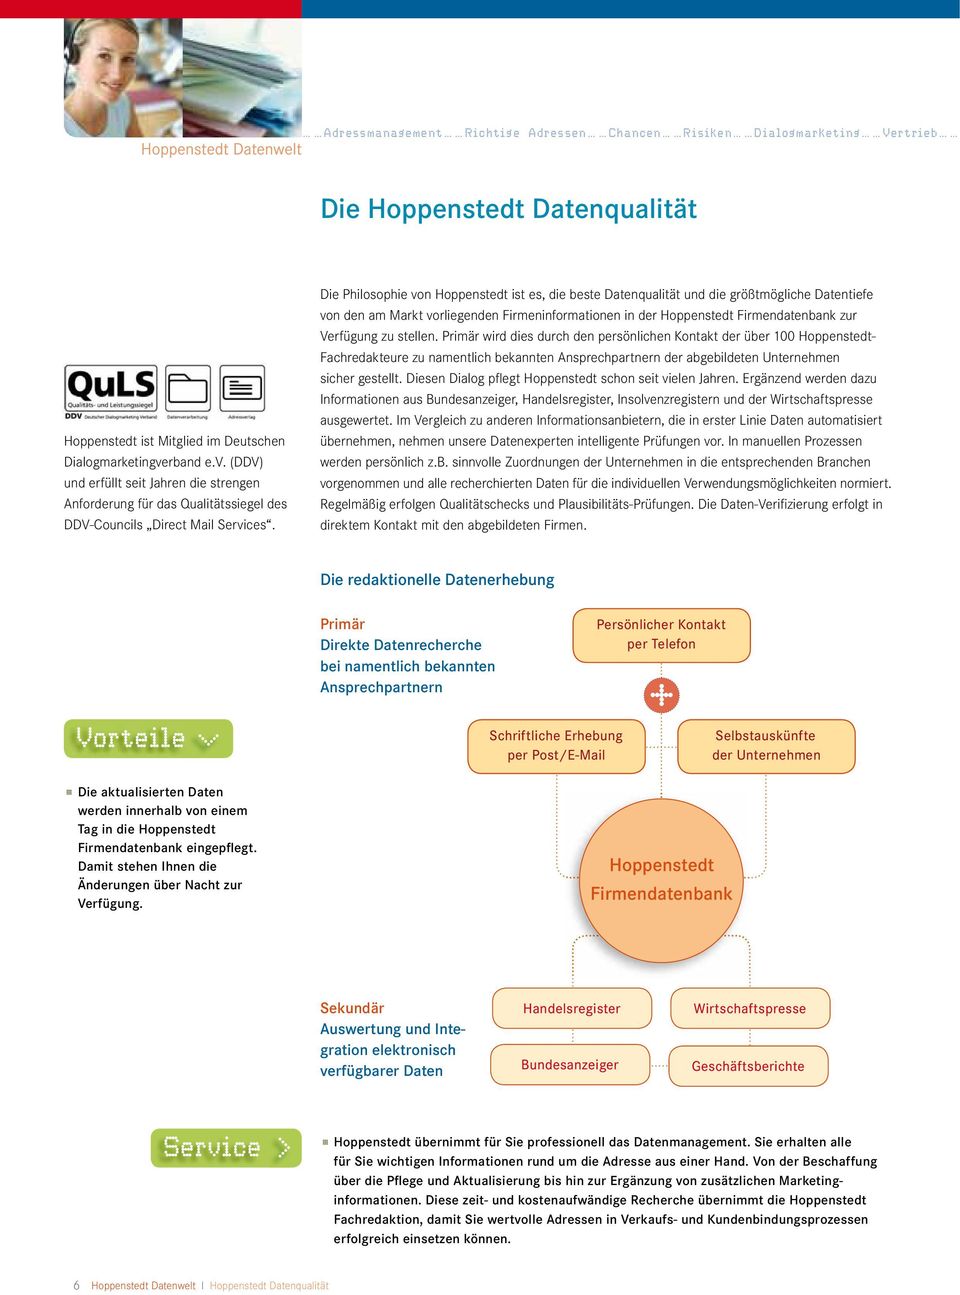 Die Philosophie von Hoppenstedt ist es, die beste Datenqualität und die größtmögliche Datentiefe von den am Markt vorliegenden Firmeninformationen in der Hoppenstedt Firmendatenbank zur Verfügung zu